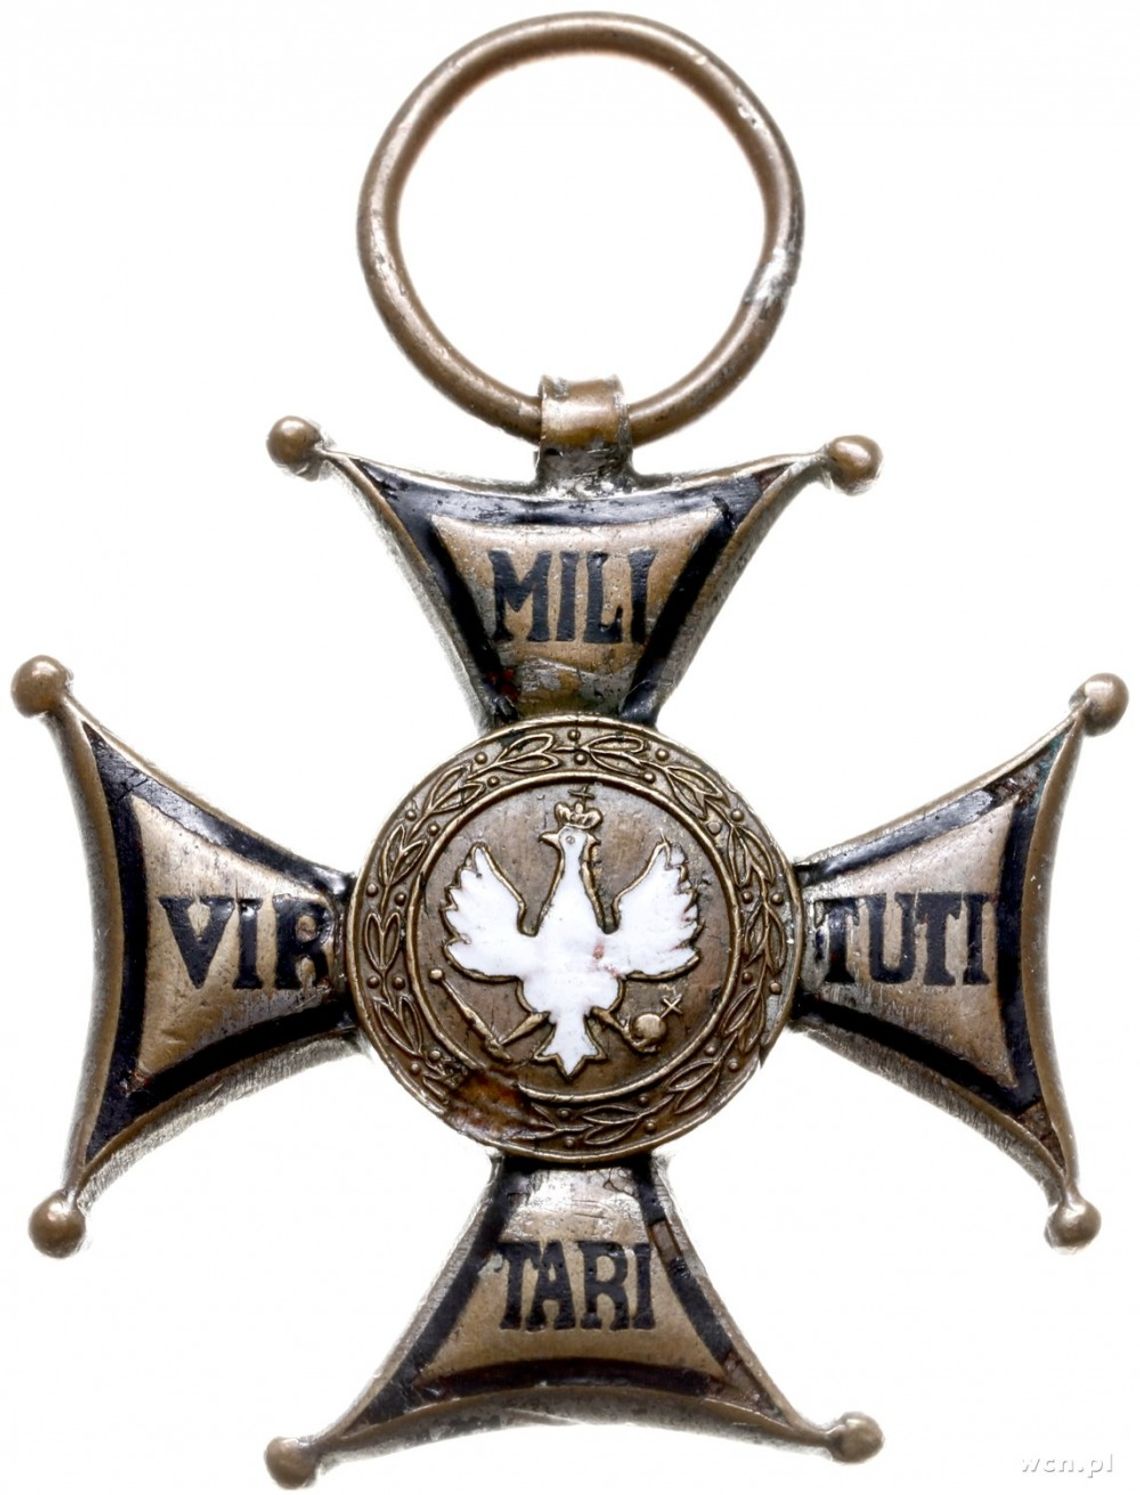 Virtuti Militari